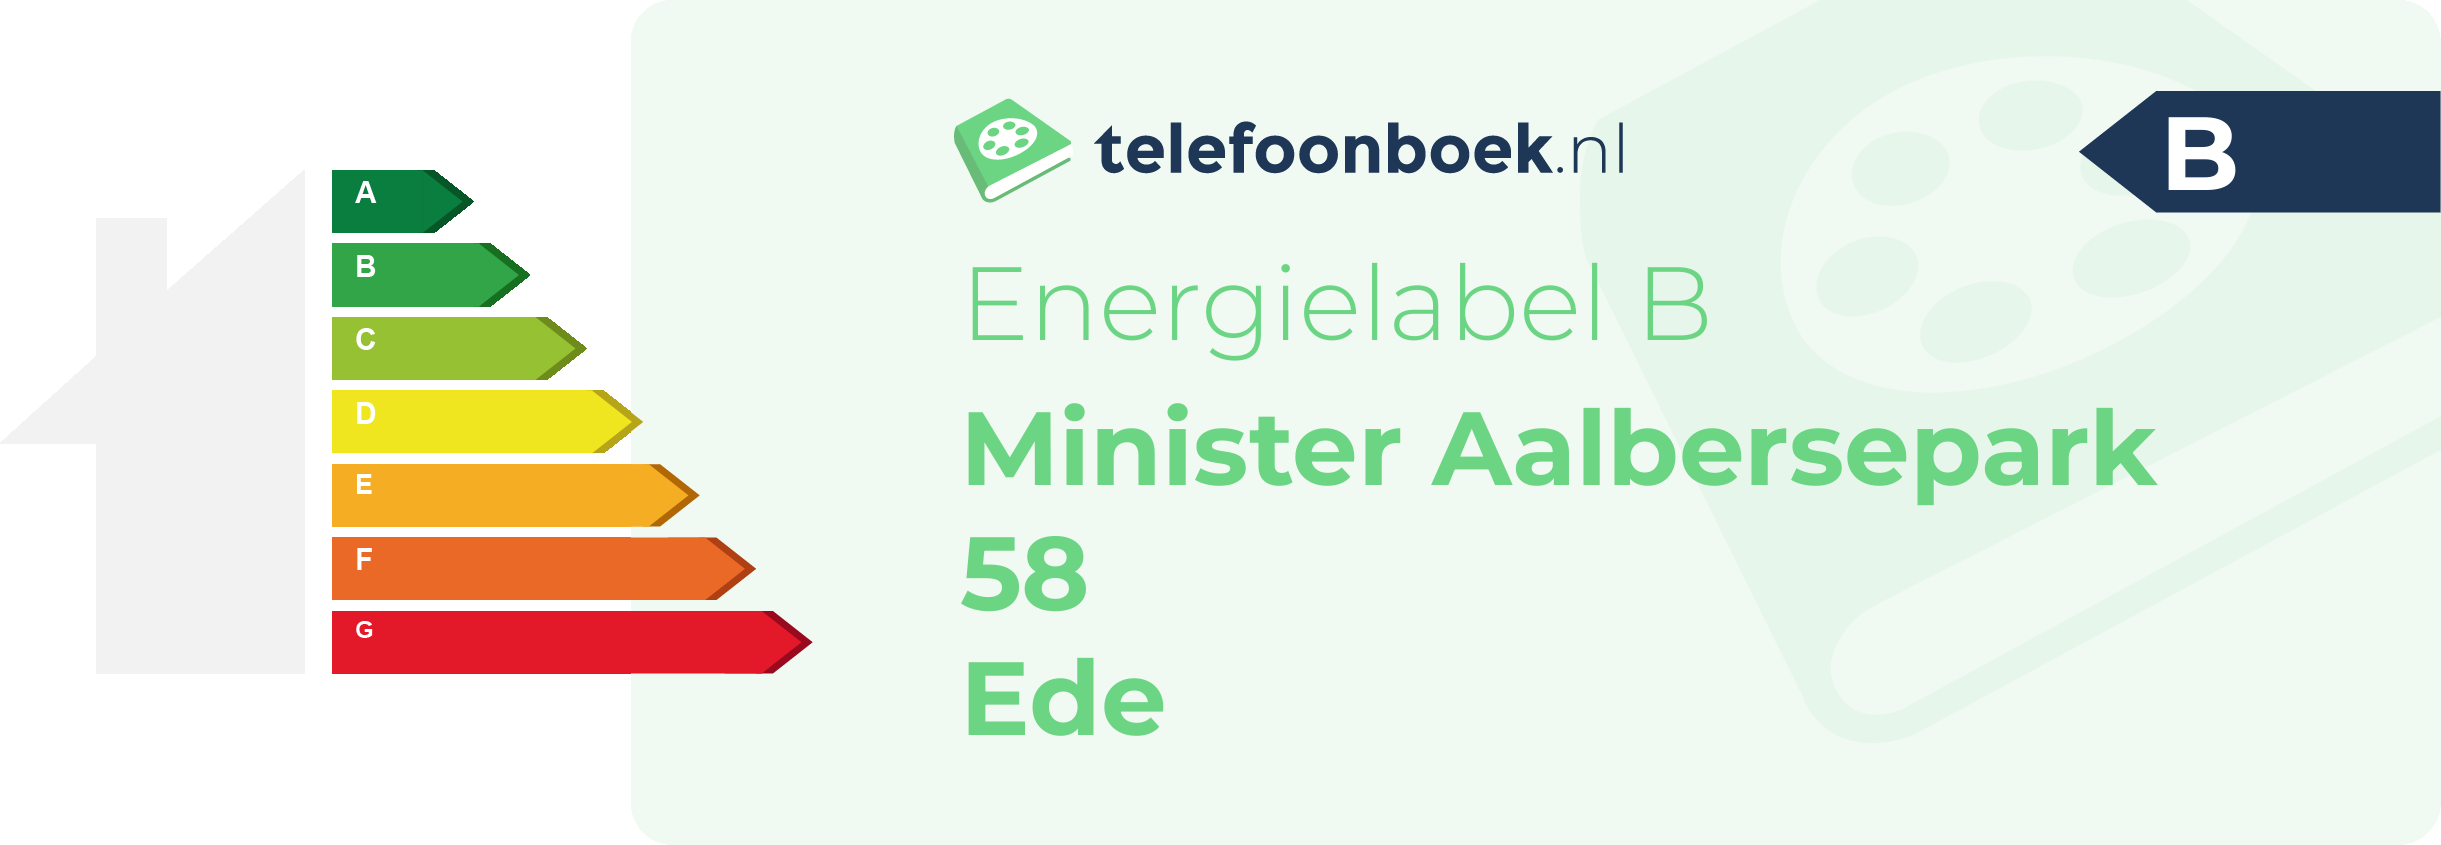 Energielabel Minister Aalbersepark 58 Ede